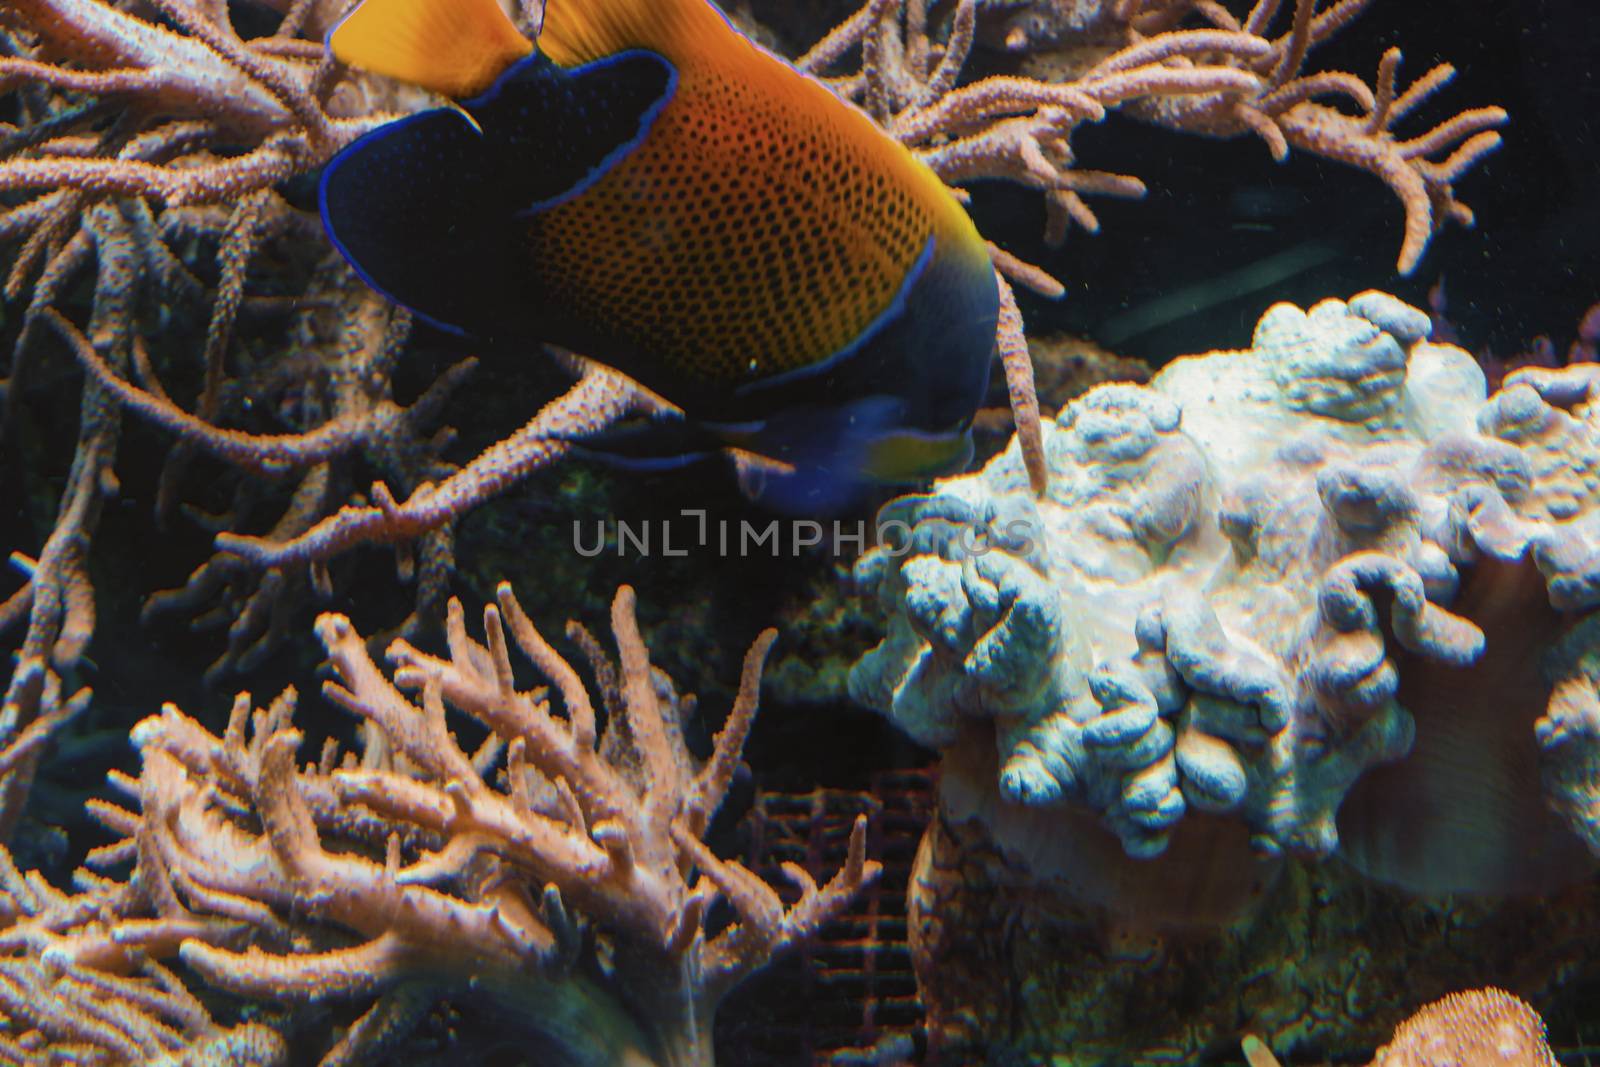 Underwater shot, fish in an aquarium       by JFsPic